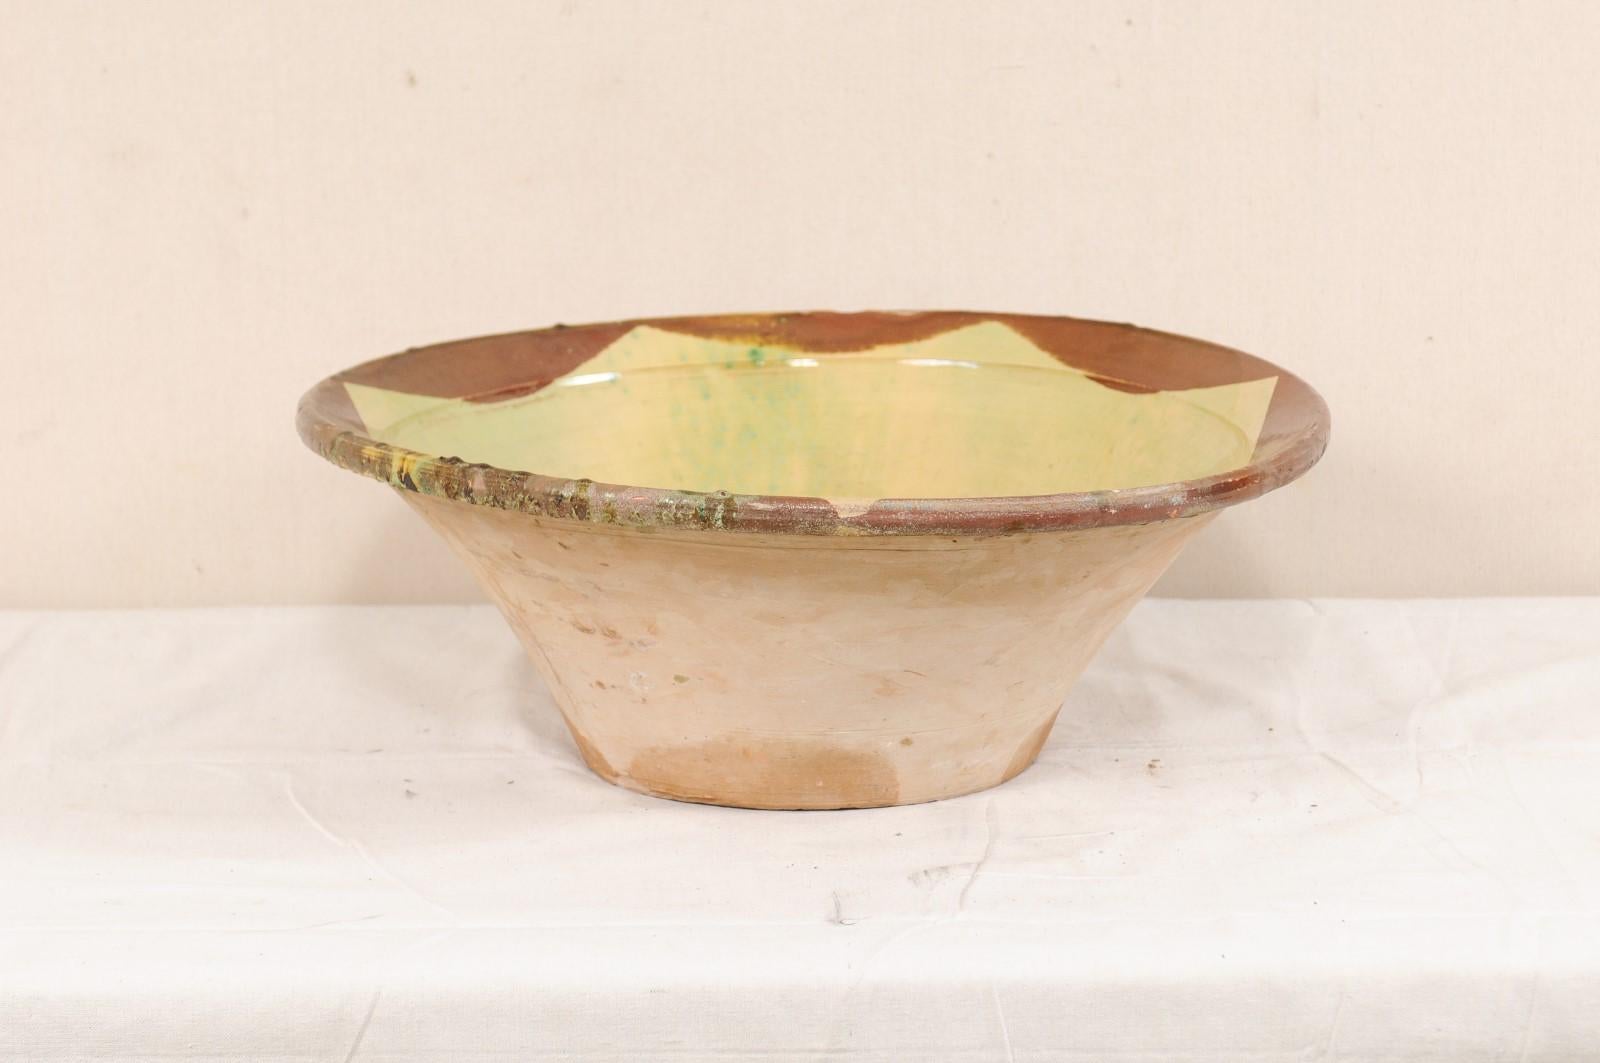 Antique Spanish Glazed Terracotta Bowl from Spain 1